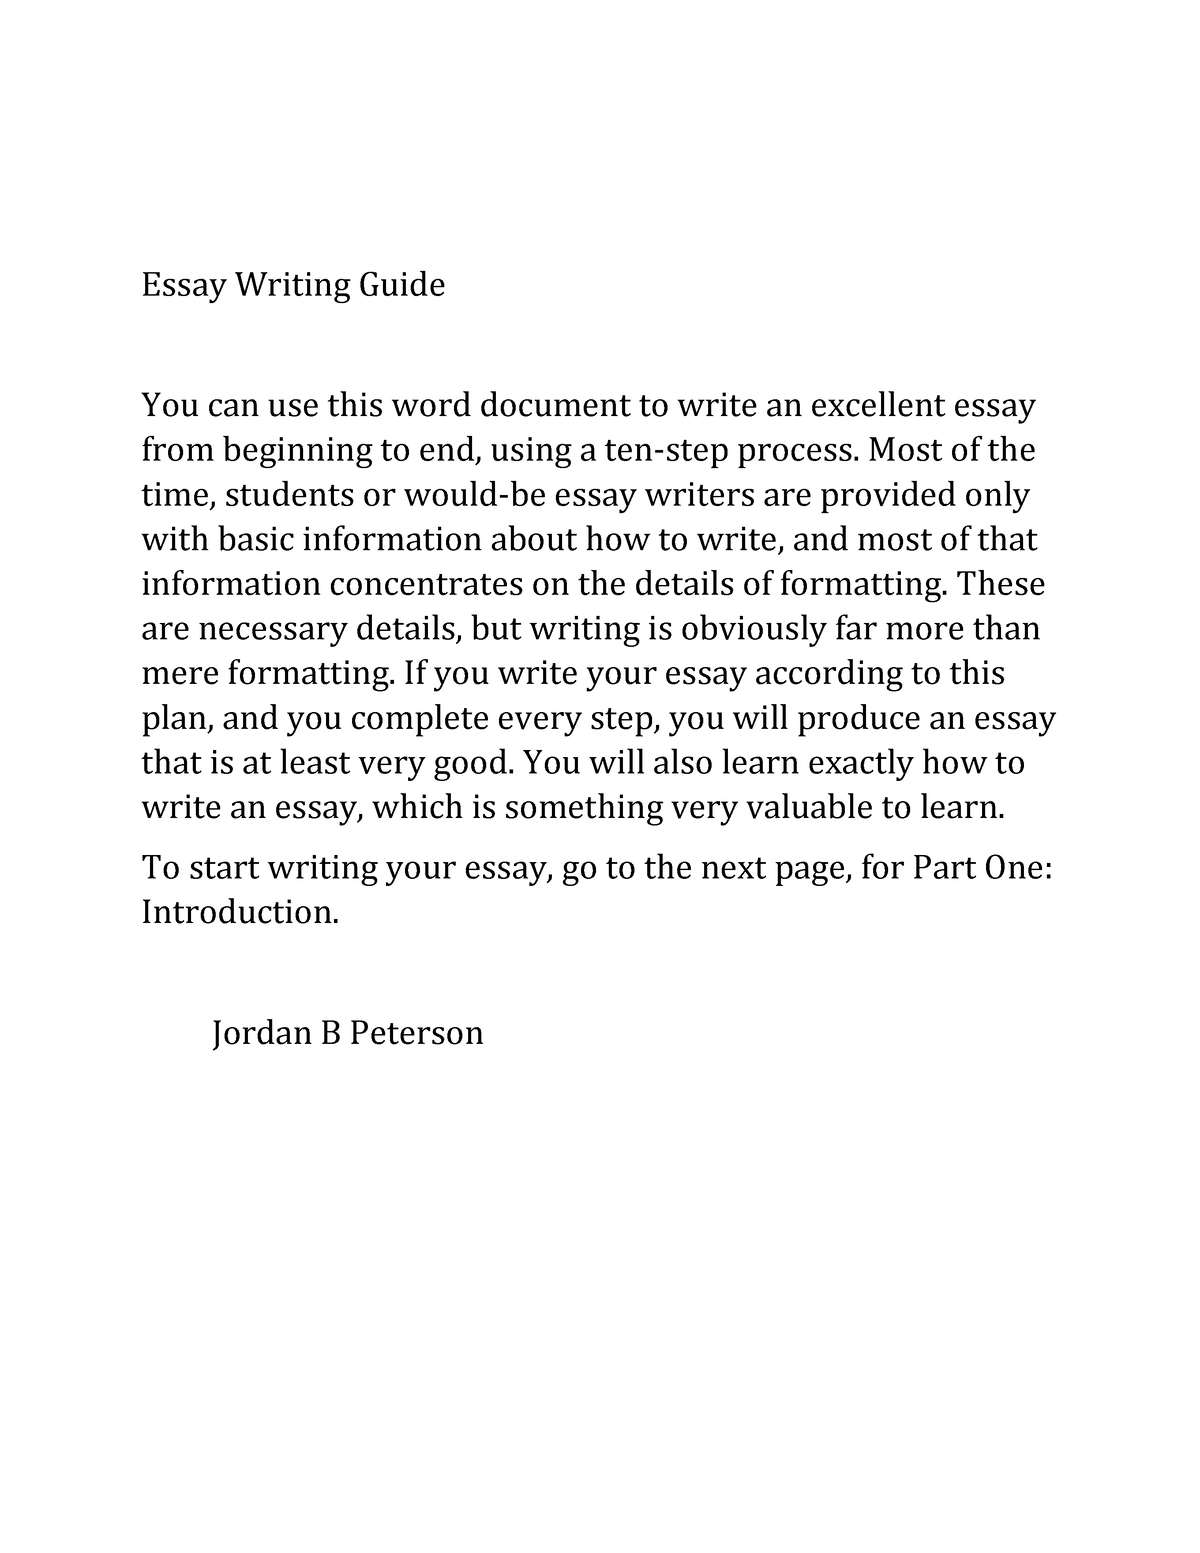 jordan peterson essay writing guide reddit